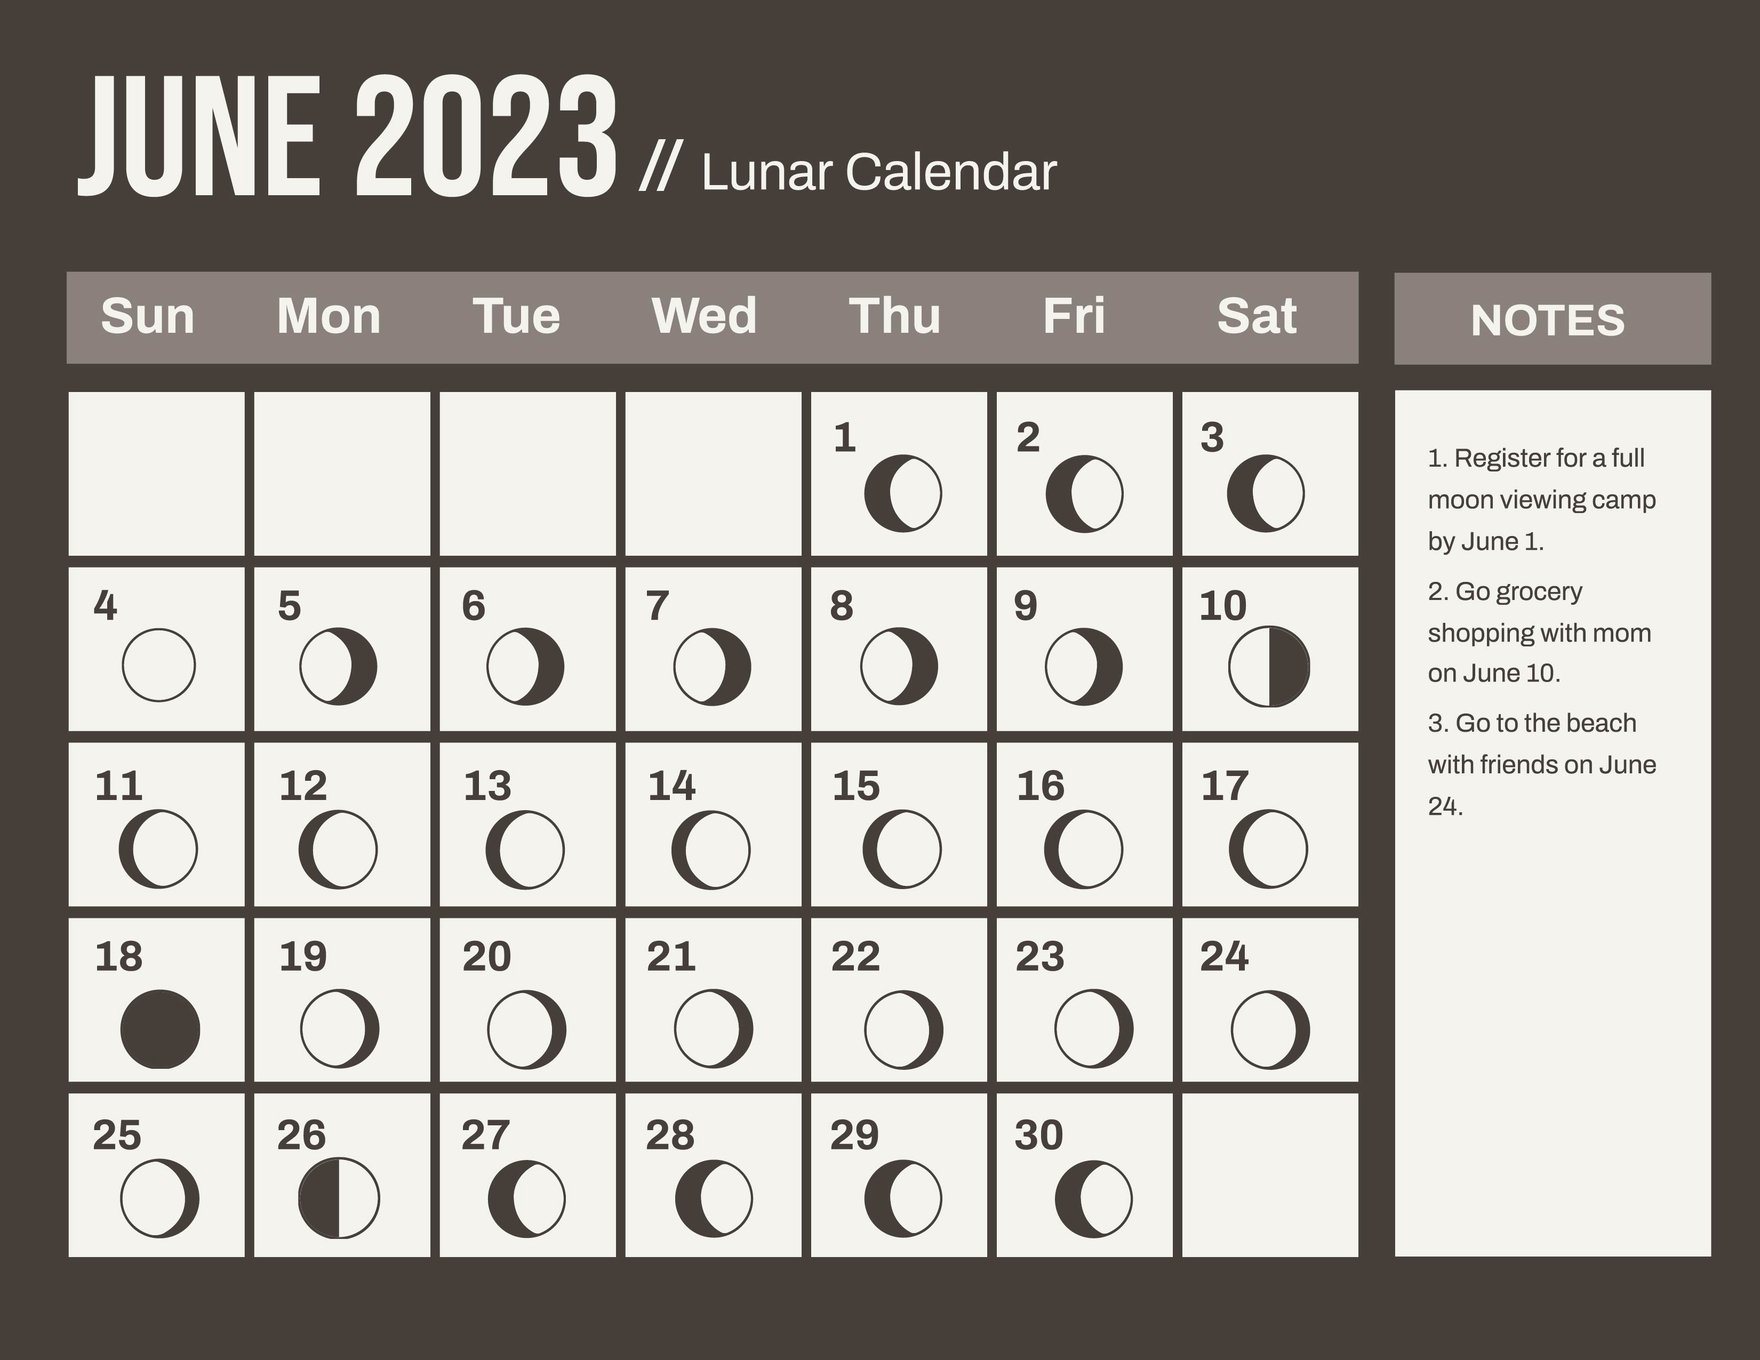 Lunar Calendar June 2023